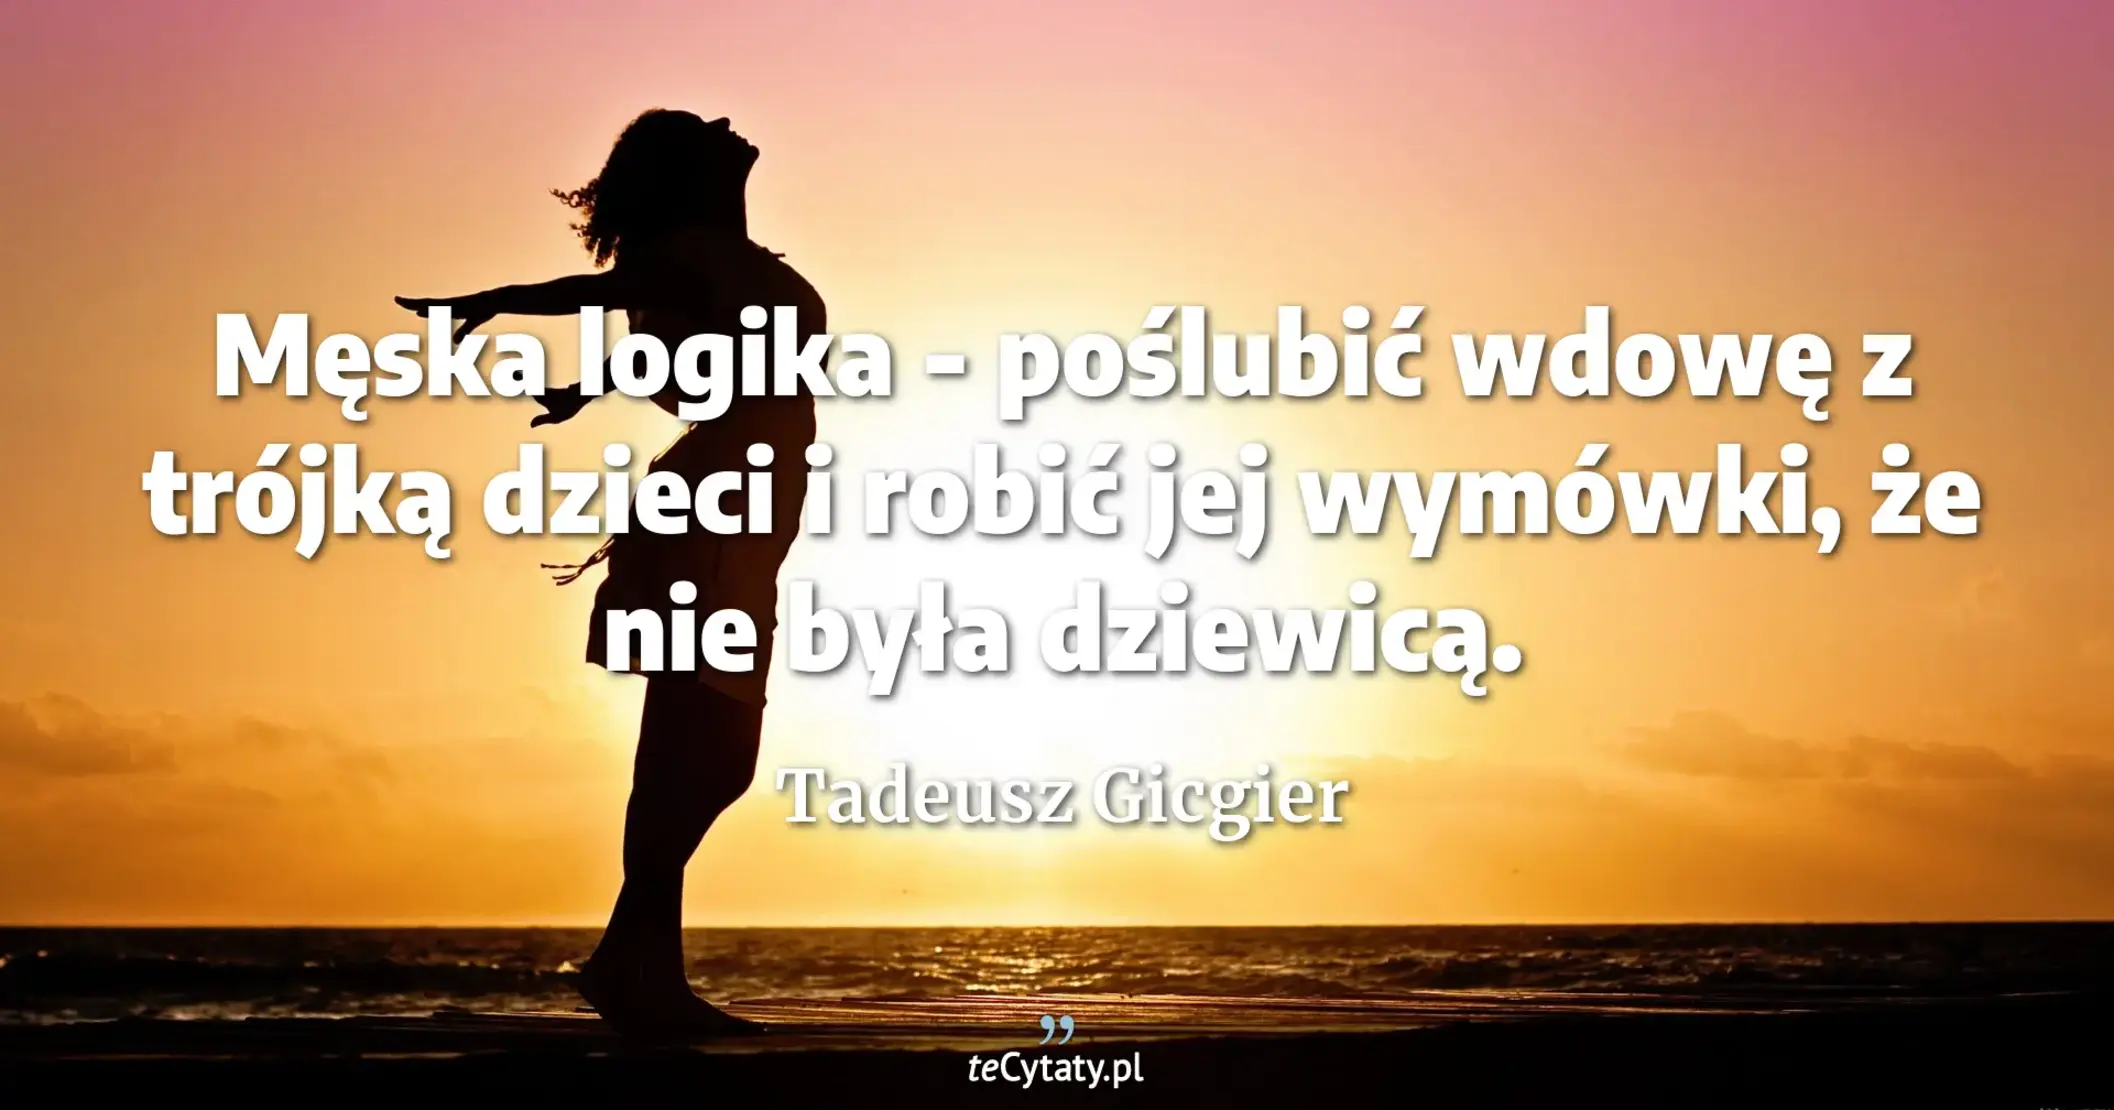 Męska logika - poślubić wdowę z trójką dzieci i robić jej wymówki, że nie była dziewicą. - Tadeusz Gicgier